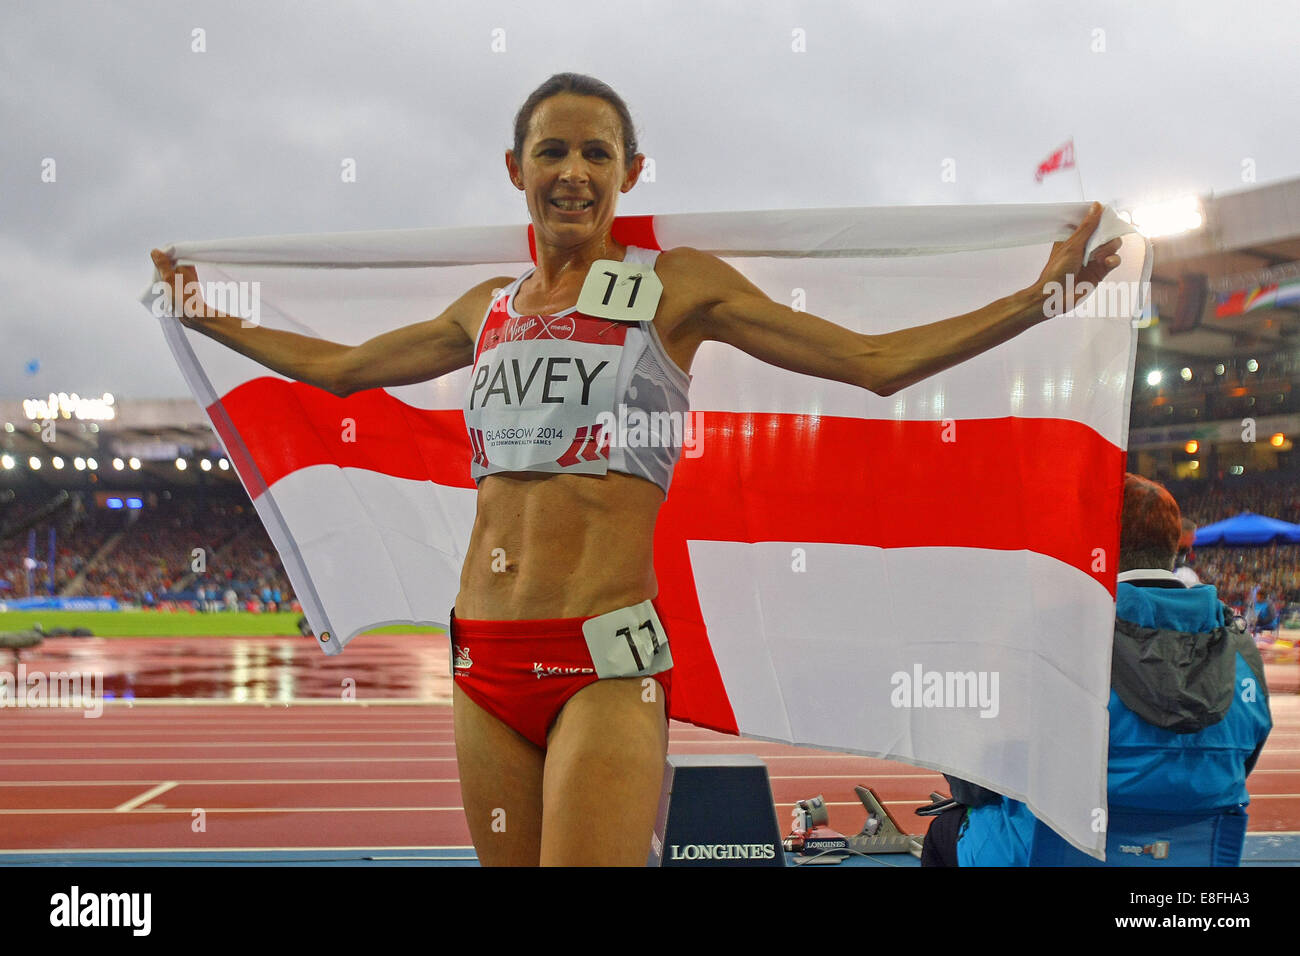 Jo Pavey (ENG)-Bronze-Medaille feiert mit der Flagge-Frauen 5000 m Finale. Leichtathletik - Hampden Park - Glasgow - UK - 08.02.2014 Stockfoto